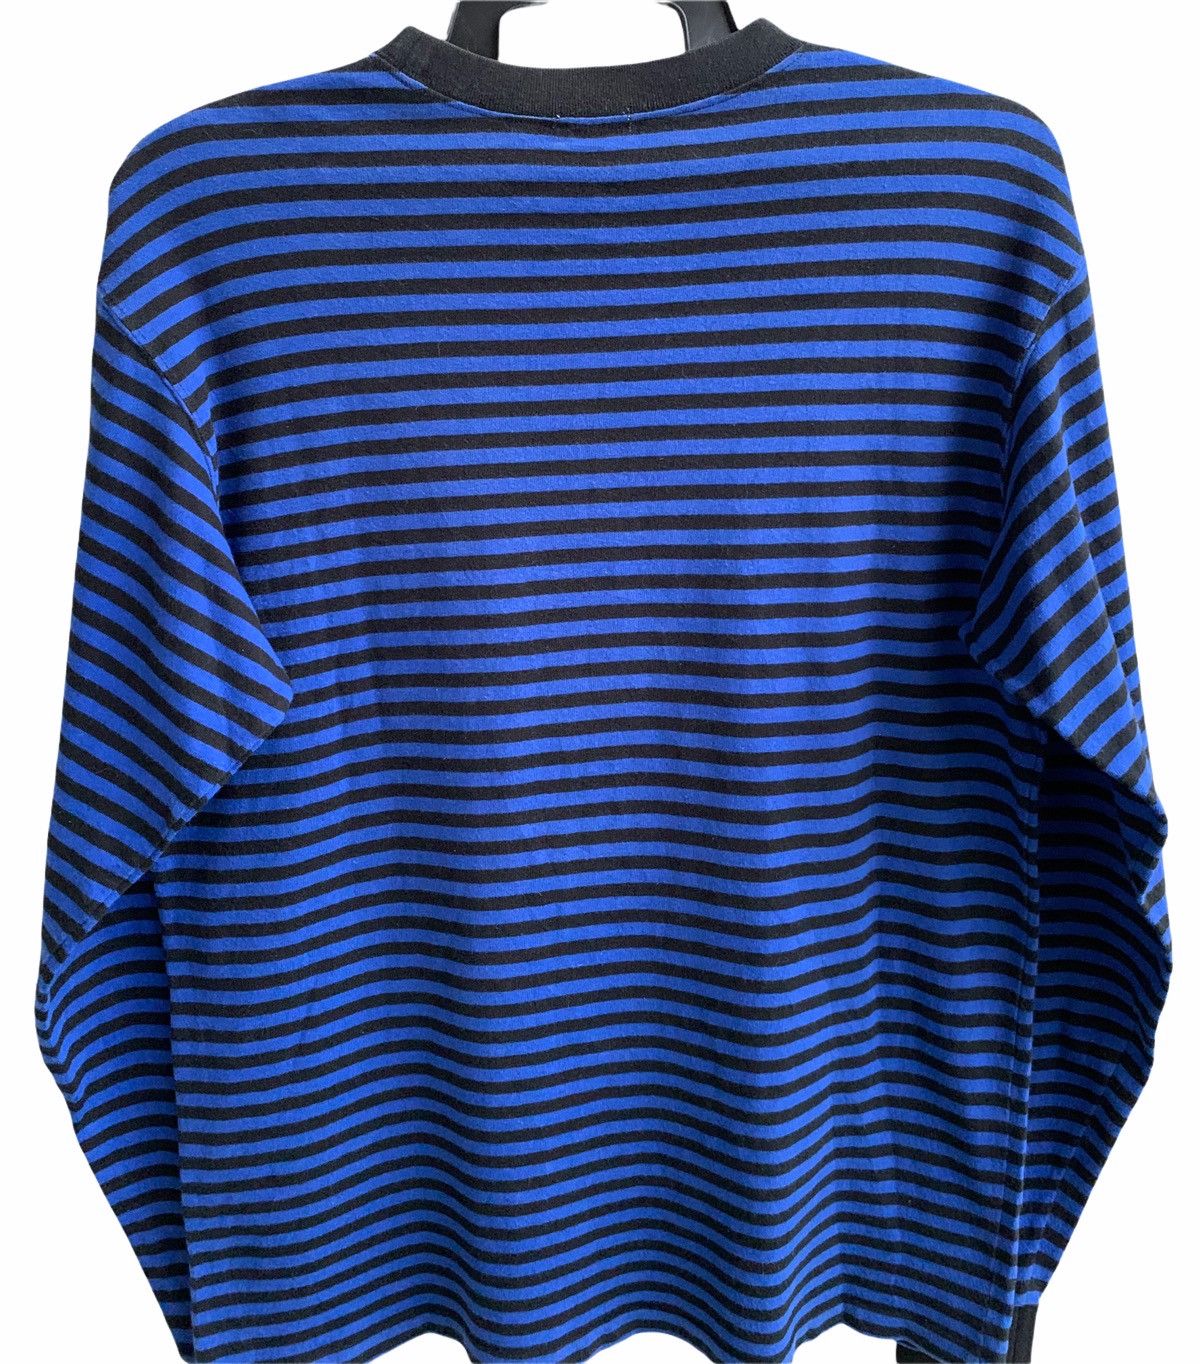 Goodenough Vinateg Good Enough Blue Striped Long Sleeve T-shirts Size US L / EU 52-54 / 3 - 5 Thumbnail